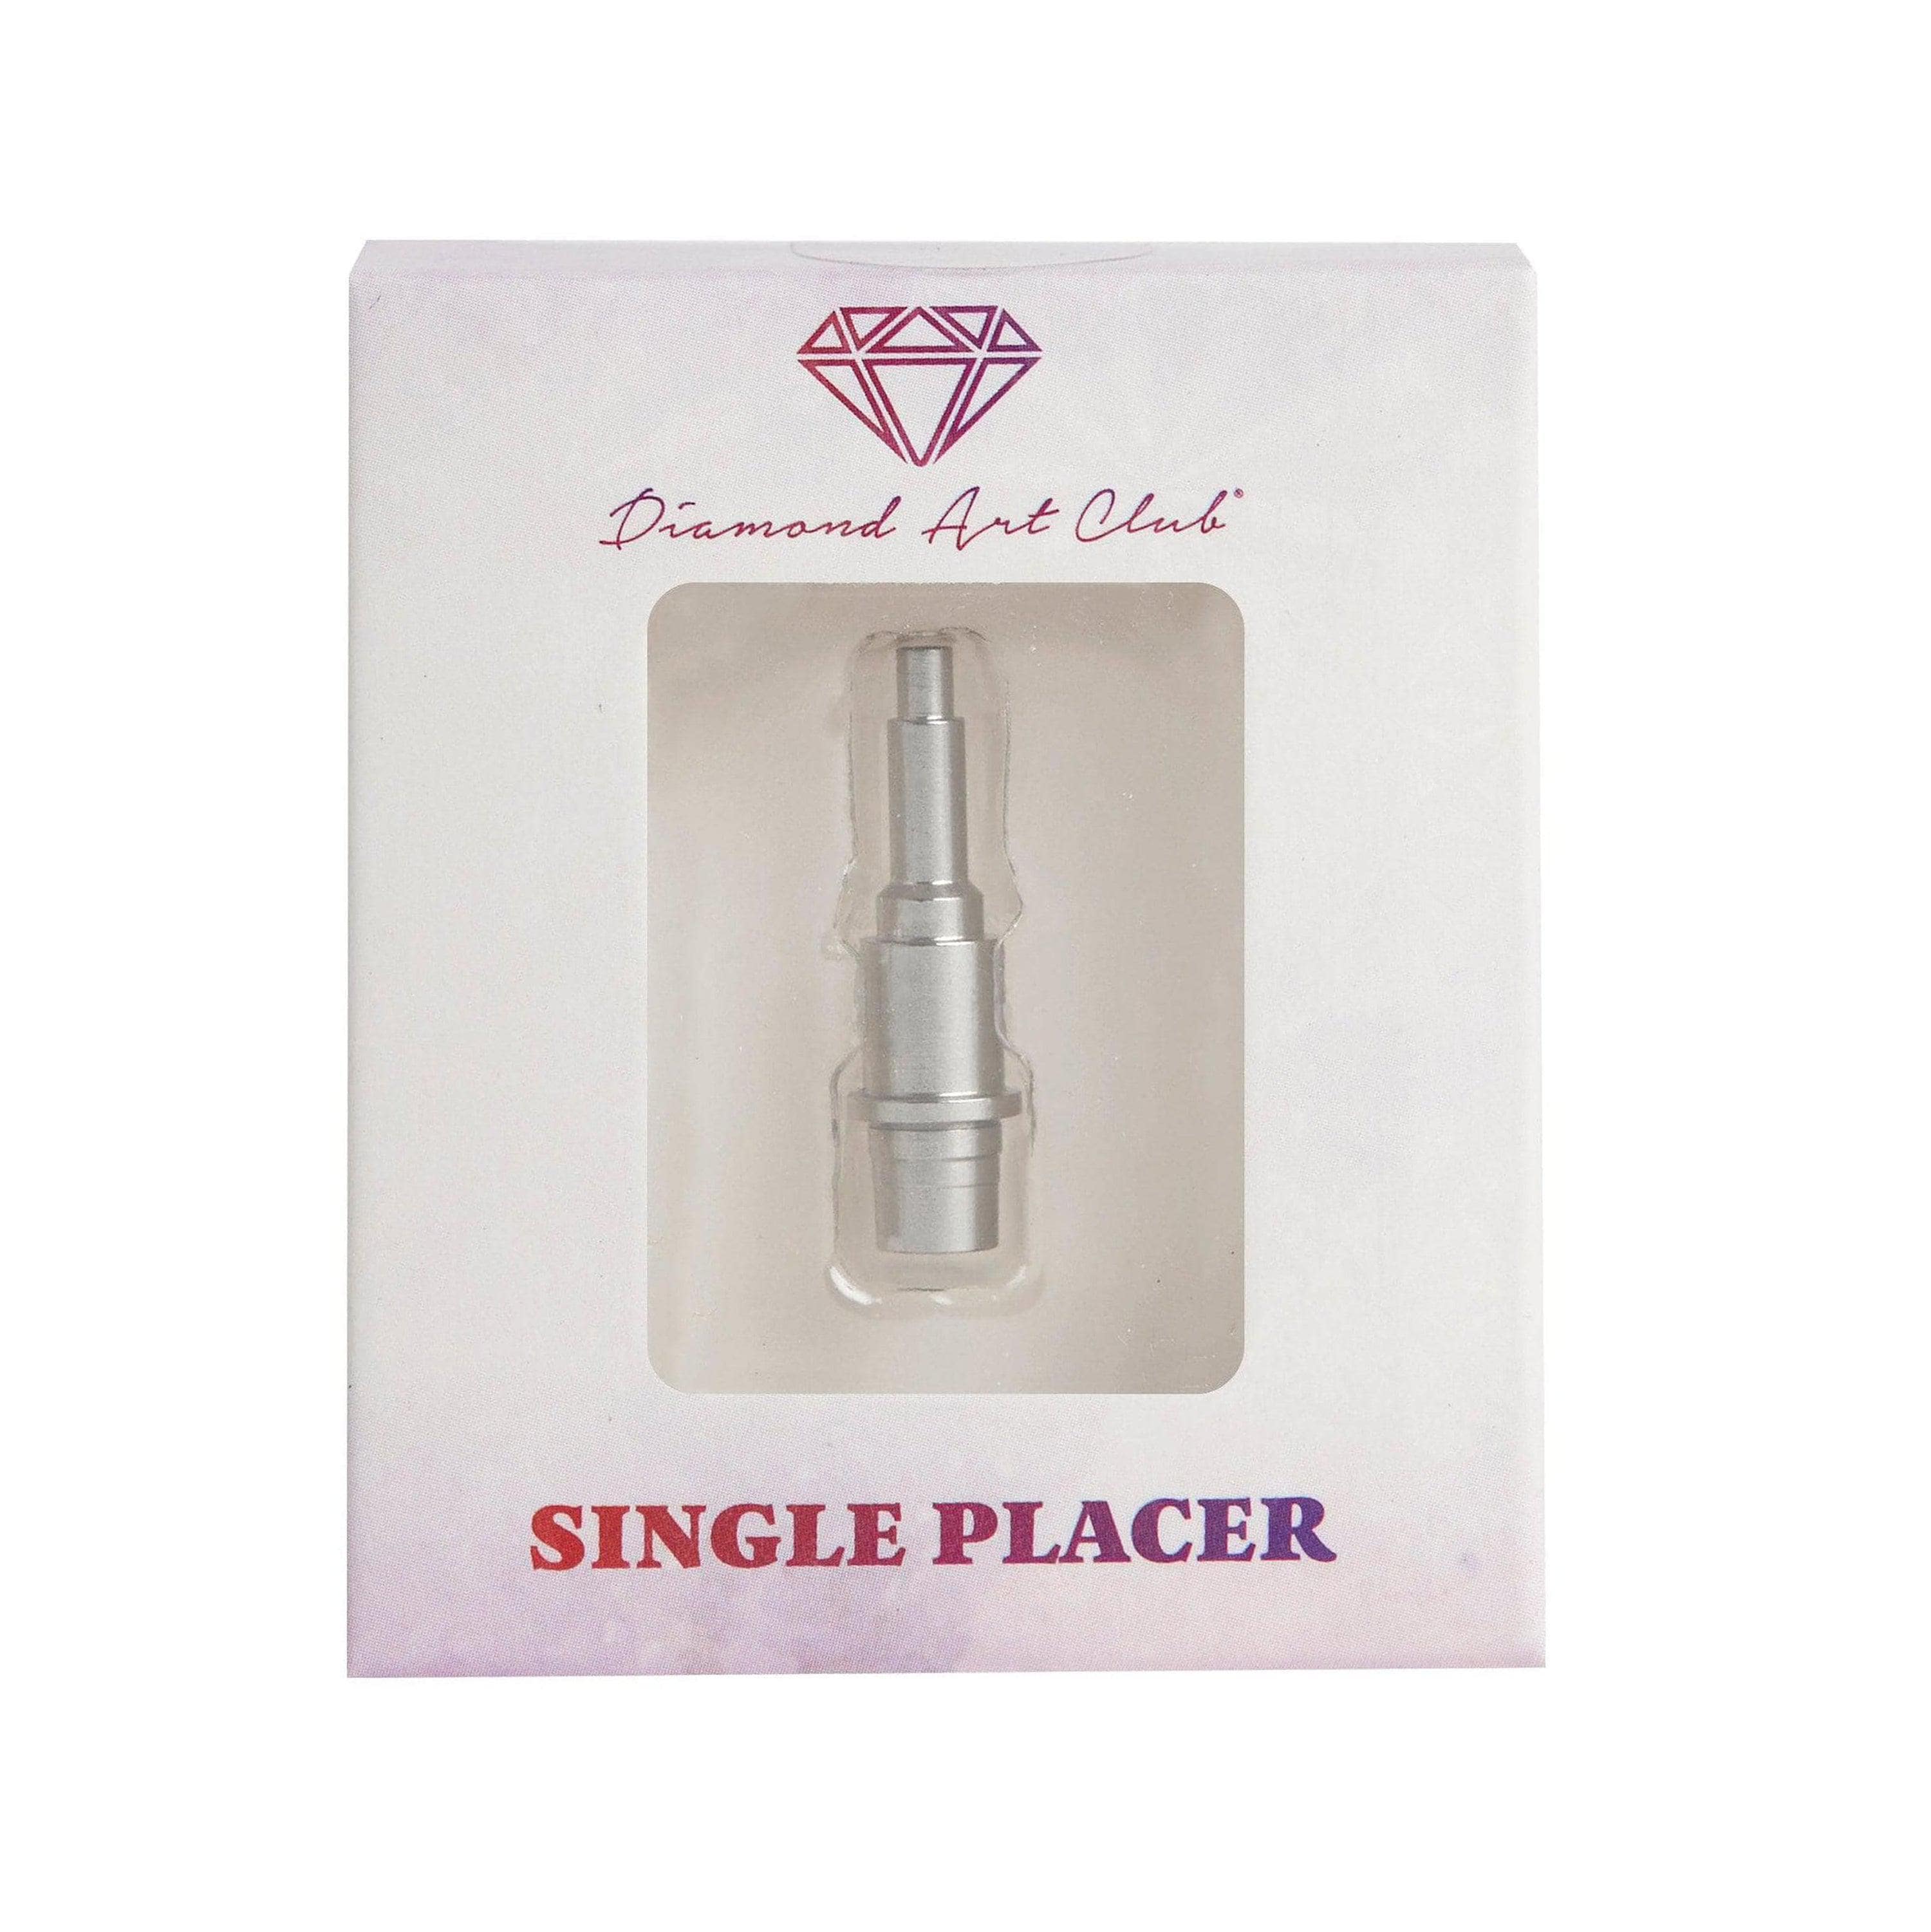 MLGDA 17 pcs diamond painting pen metal pen tips tools kits,includ  ergonomic resin diamond art